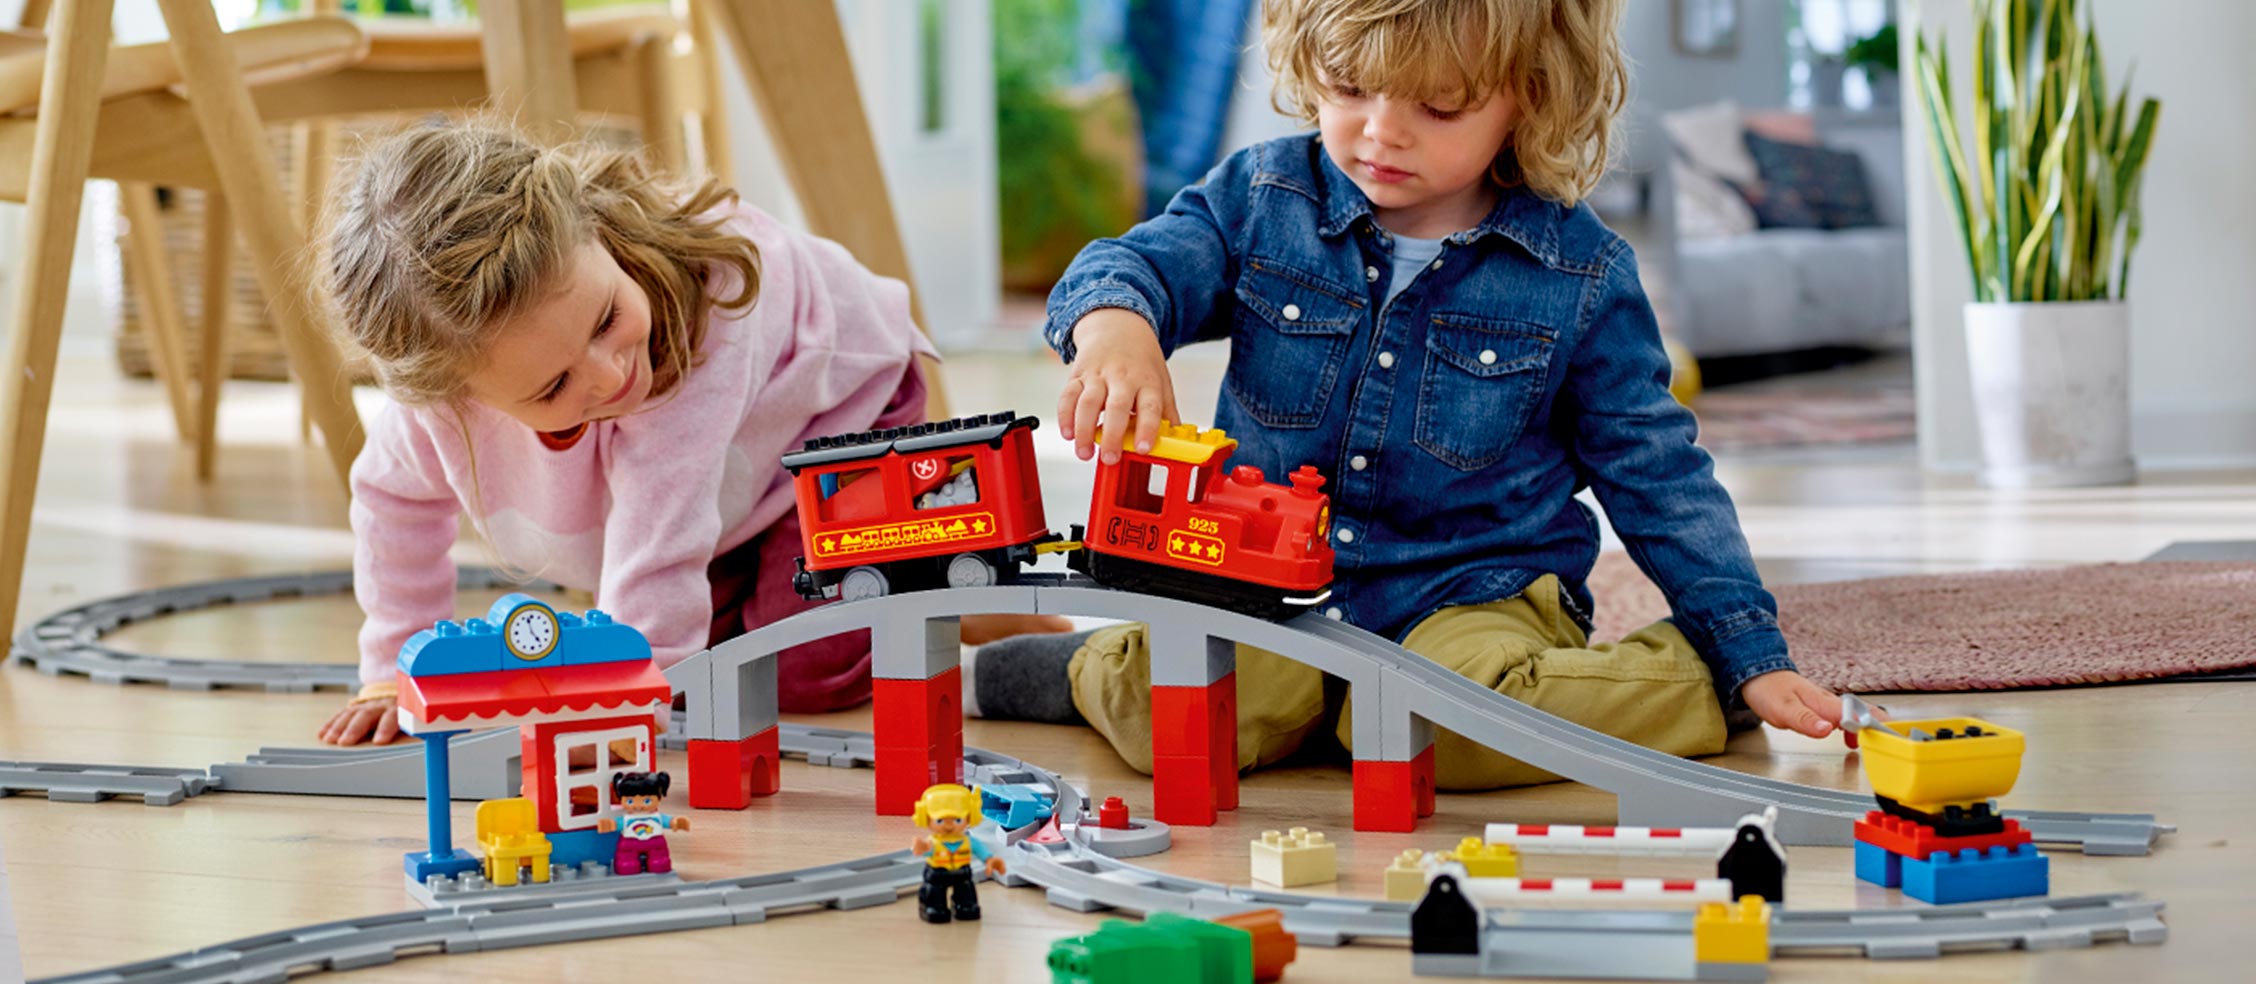 3才のお子さま向けに最適な知育玩具 |レゴ®ショップ公式オンラインストアJP